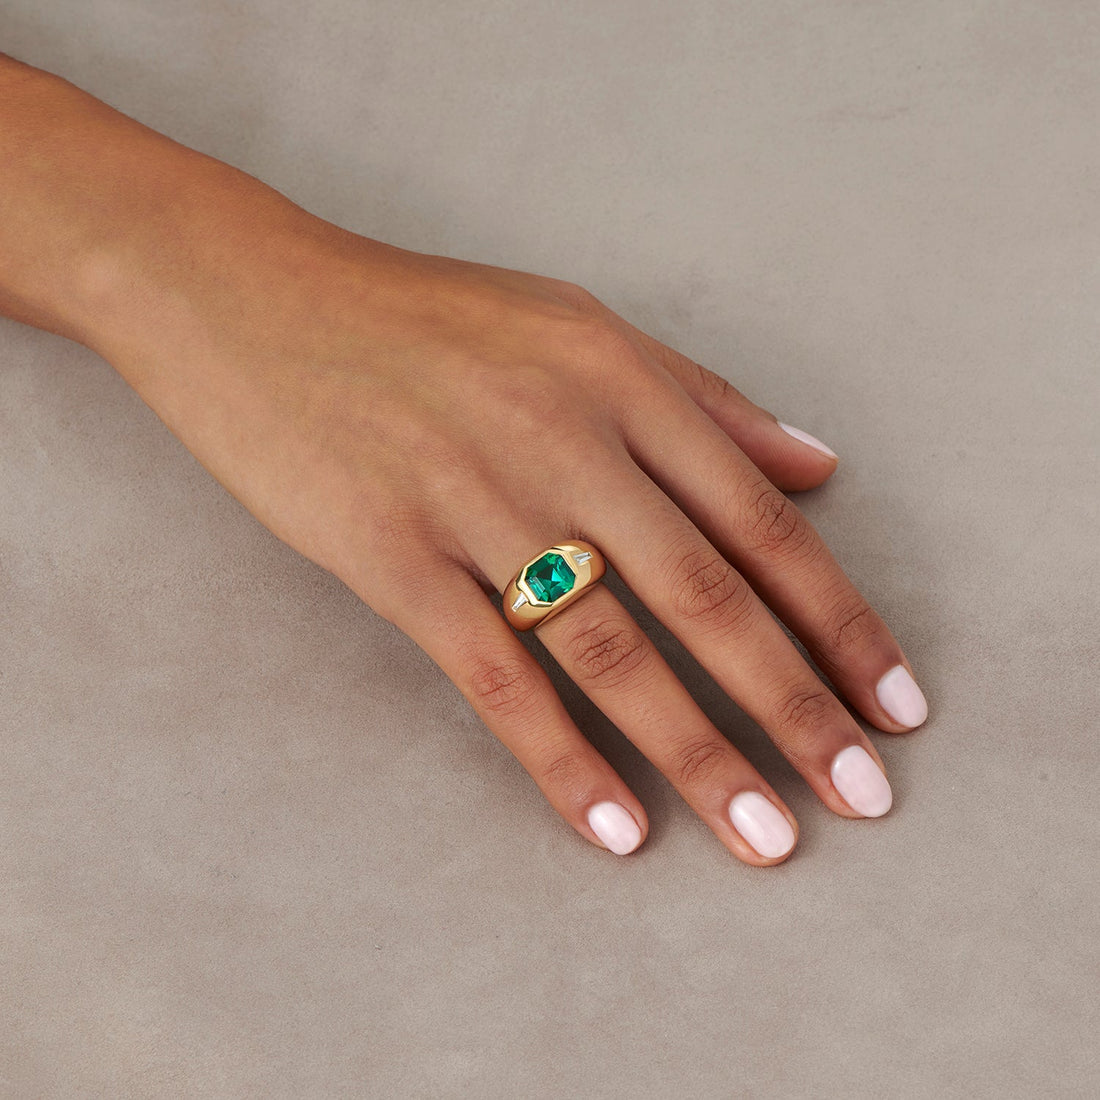  Berlin Tourmaline Ring by Minka Jewels | The Cut London